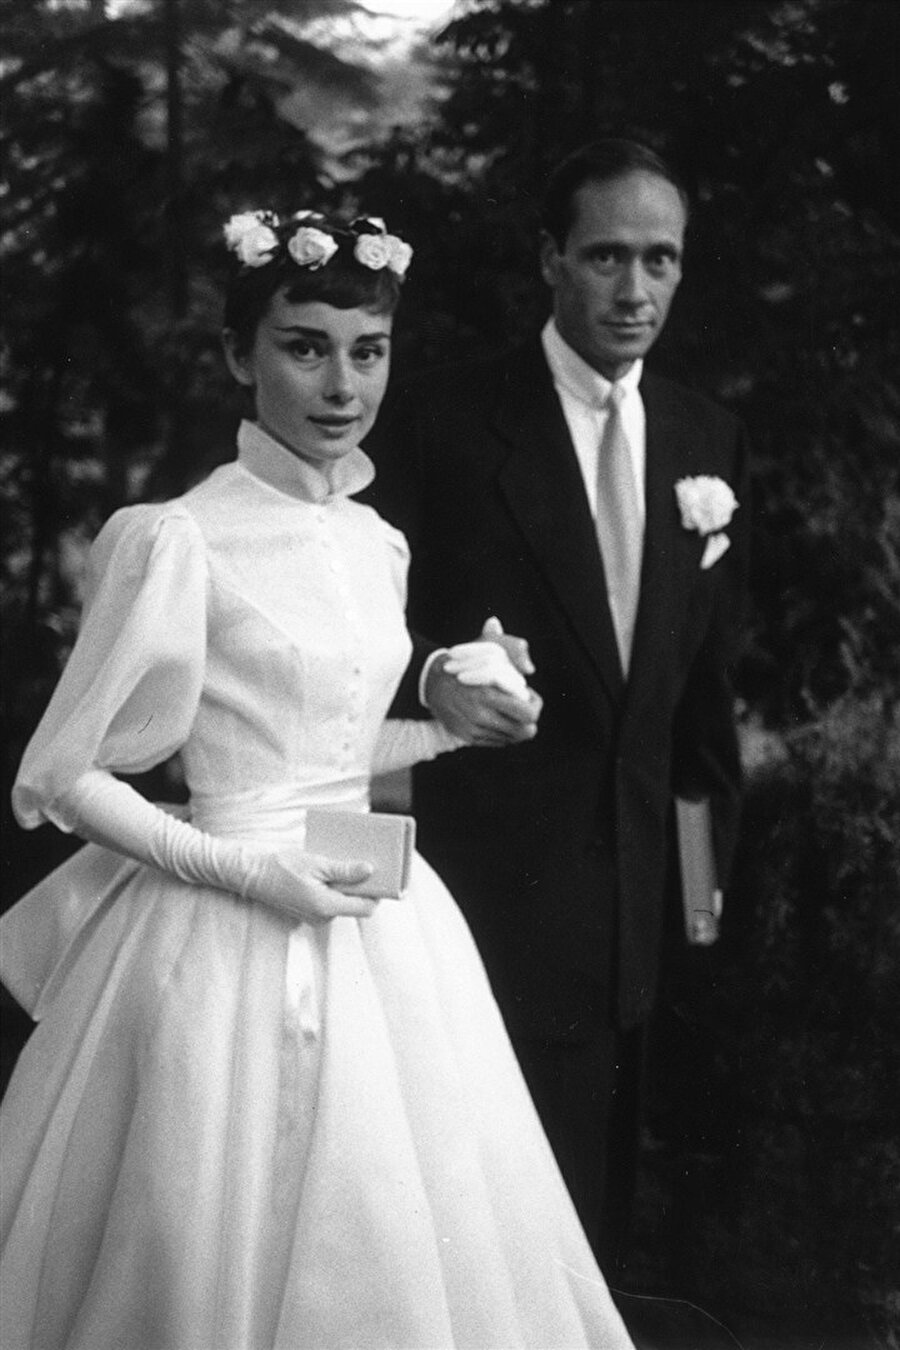 Audrey Hepburn

                                    
                                    1954 yılında Mel Ferrer'le evlenen Audrey Hepburn, Pierre Balmain imzalı bu elbiseyi giydi. Hepburn, saçında duvak yerine gül tercih etmişti.
                                
                                